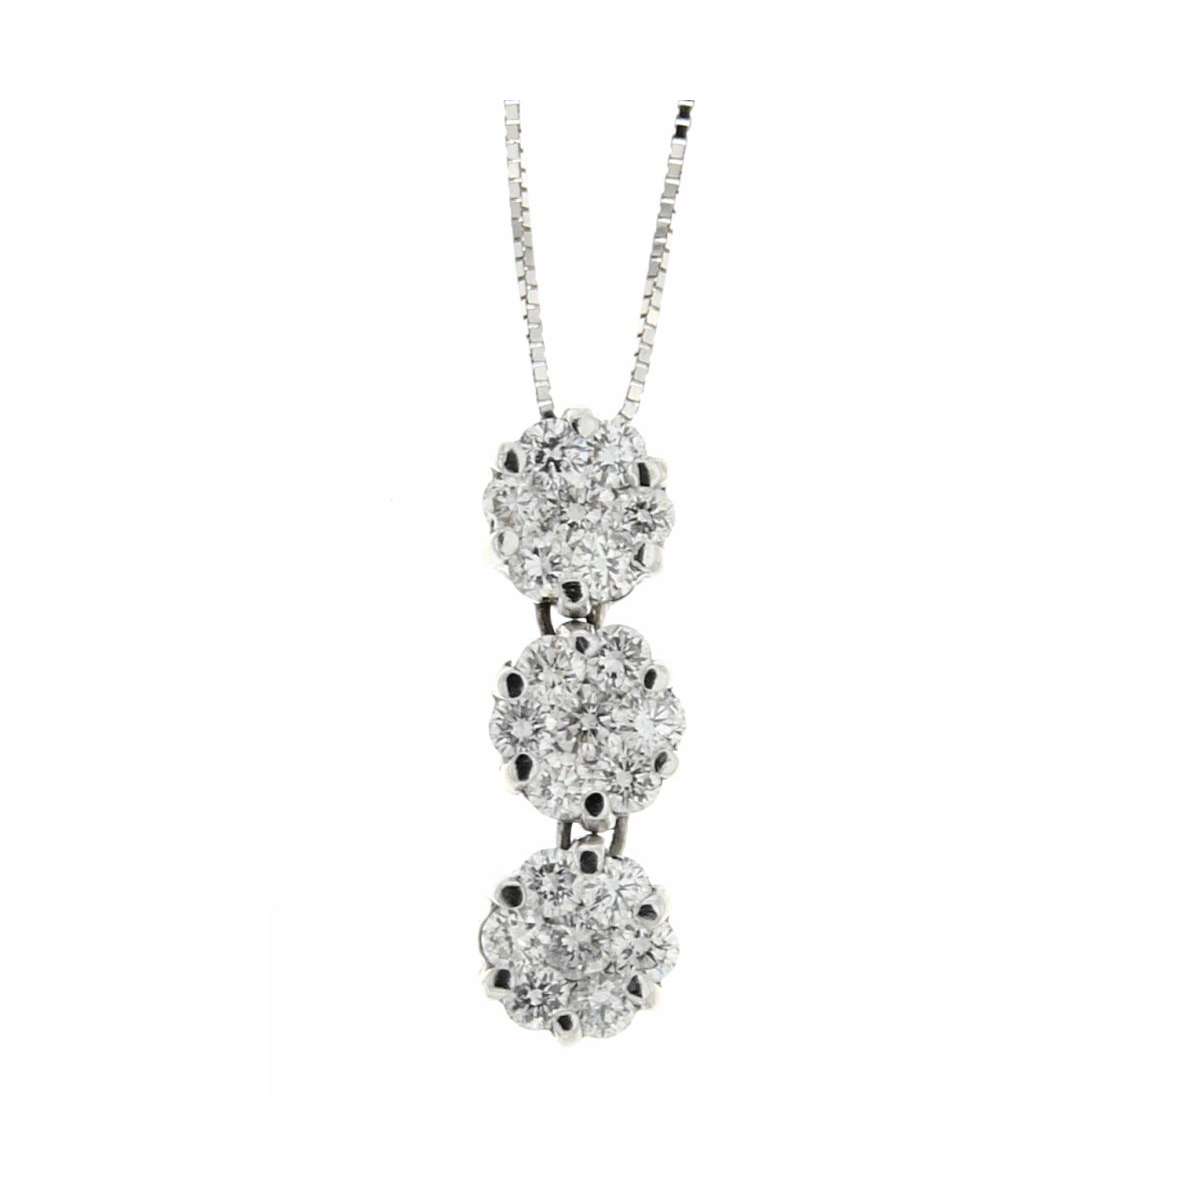 Trilogy necklace 0.87 carats diamond G-VS1 